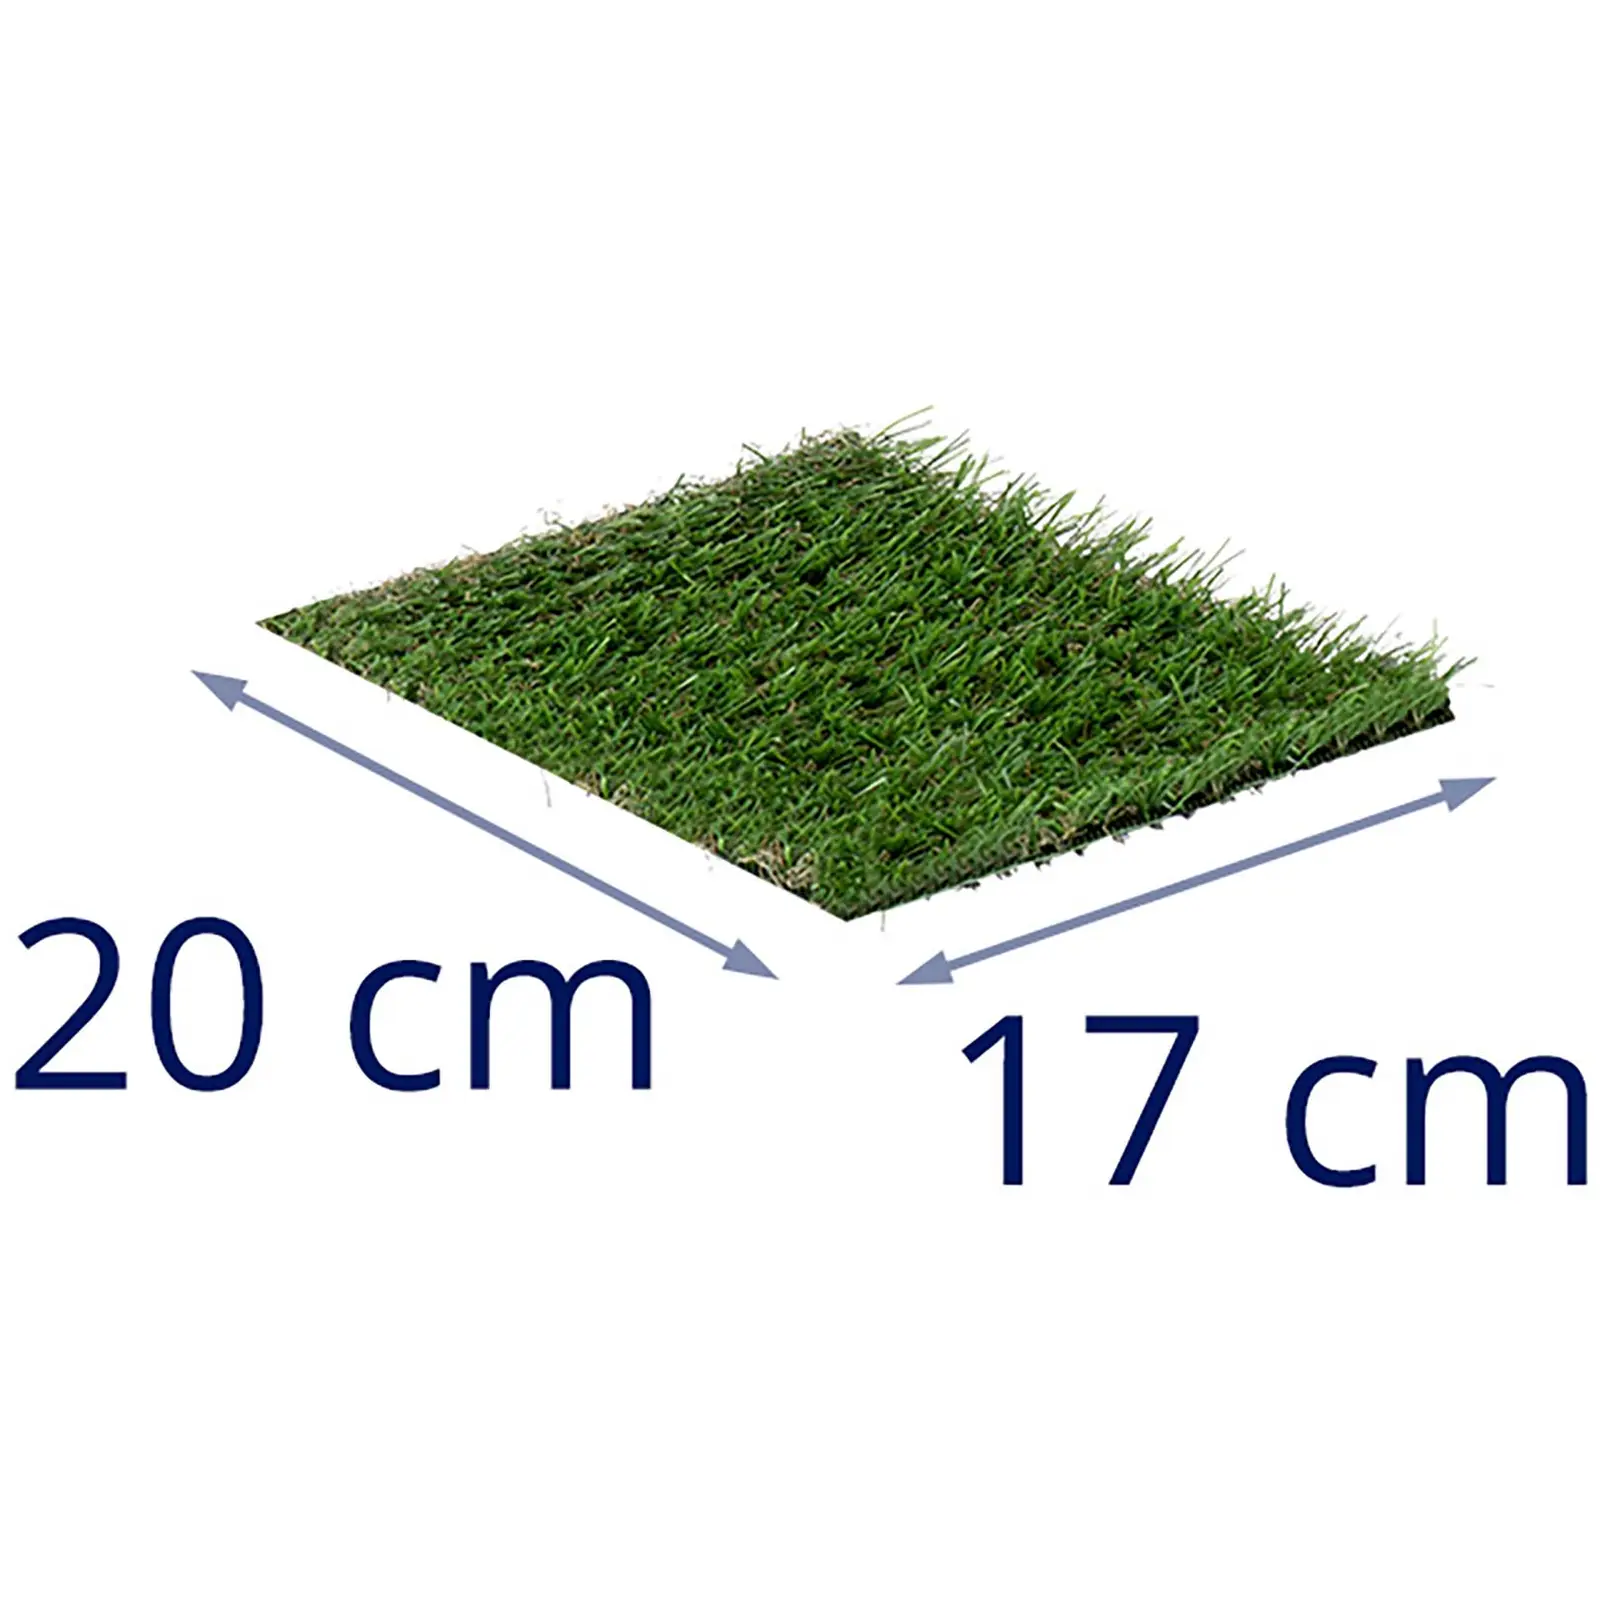 Sztuczna trawa - 3 próbki - każda po {{dimensions_1097}} cm - wysokość: 20 - 30 mm - szybkość ściegu: 20/10 13/10 14/10 cm - odporność na promieniowanie UV